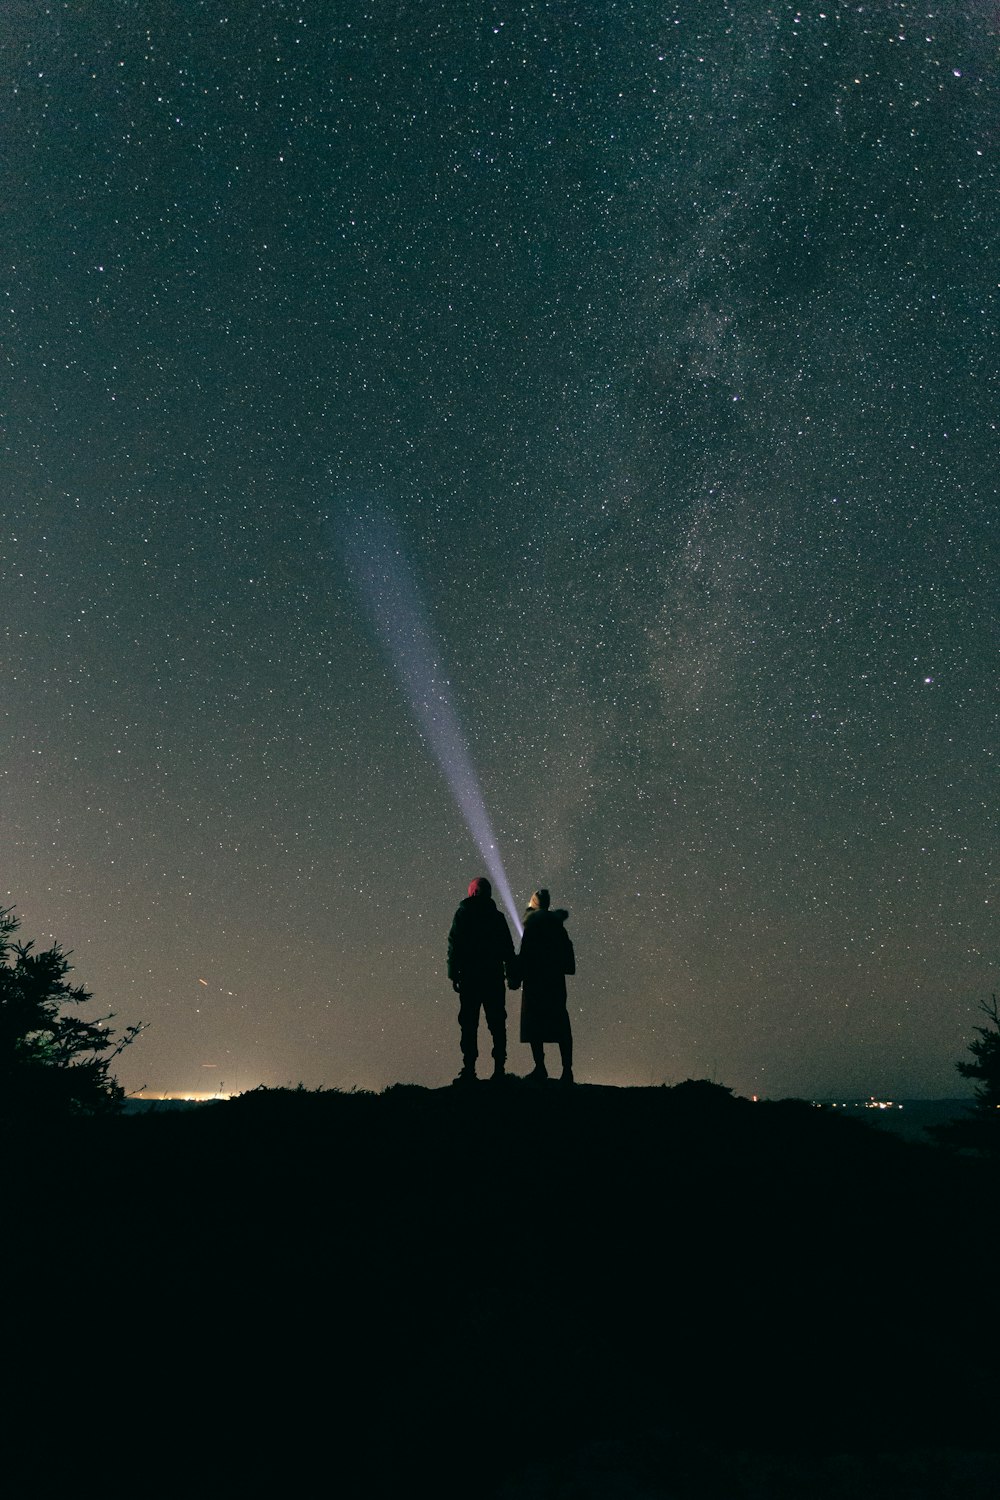 밤하늘 아래 언덕 위에 서 있는 두 사람